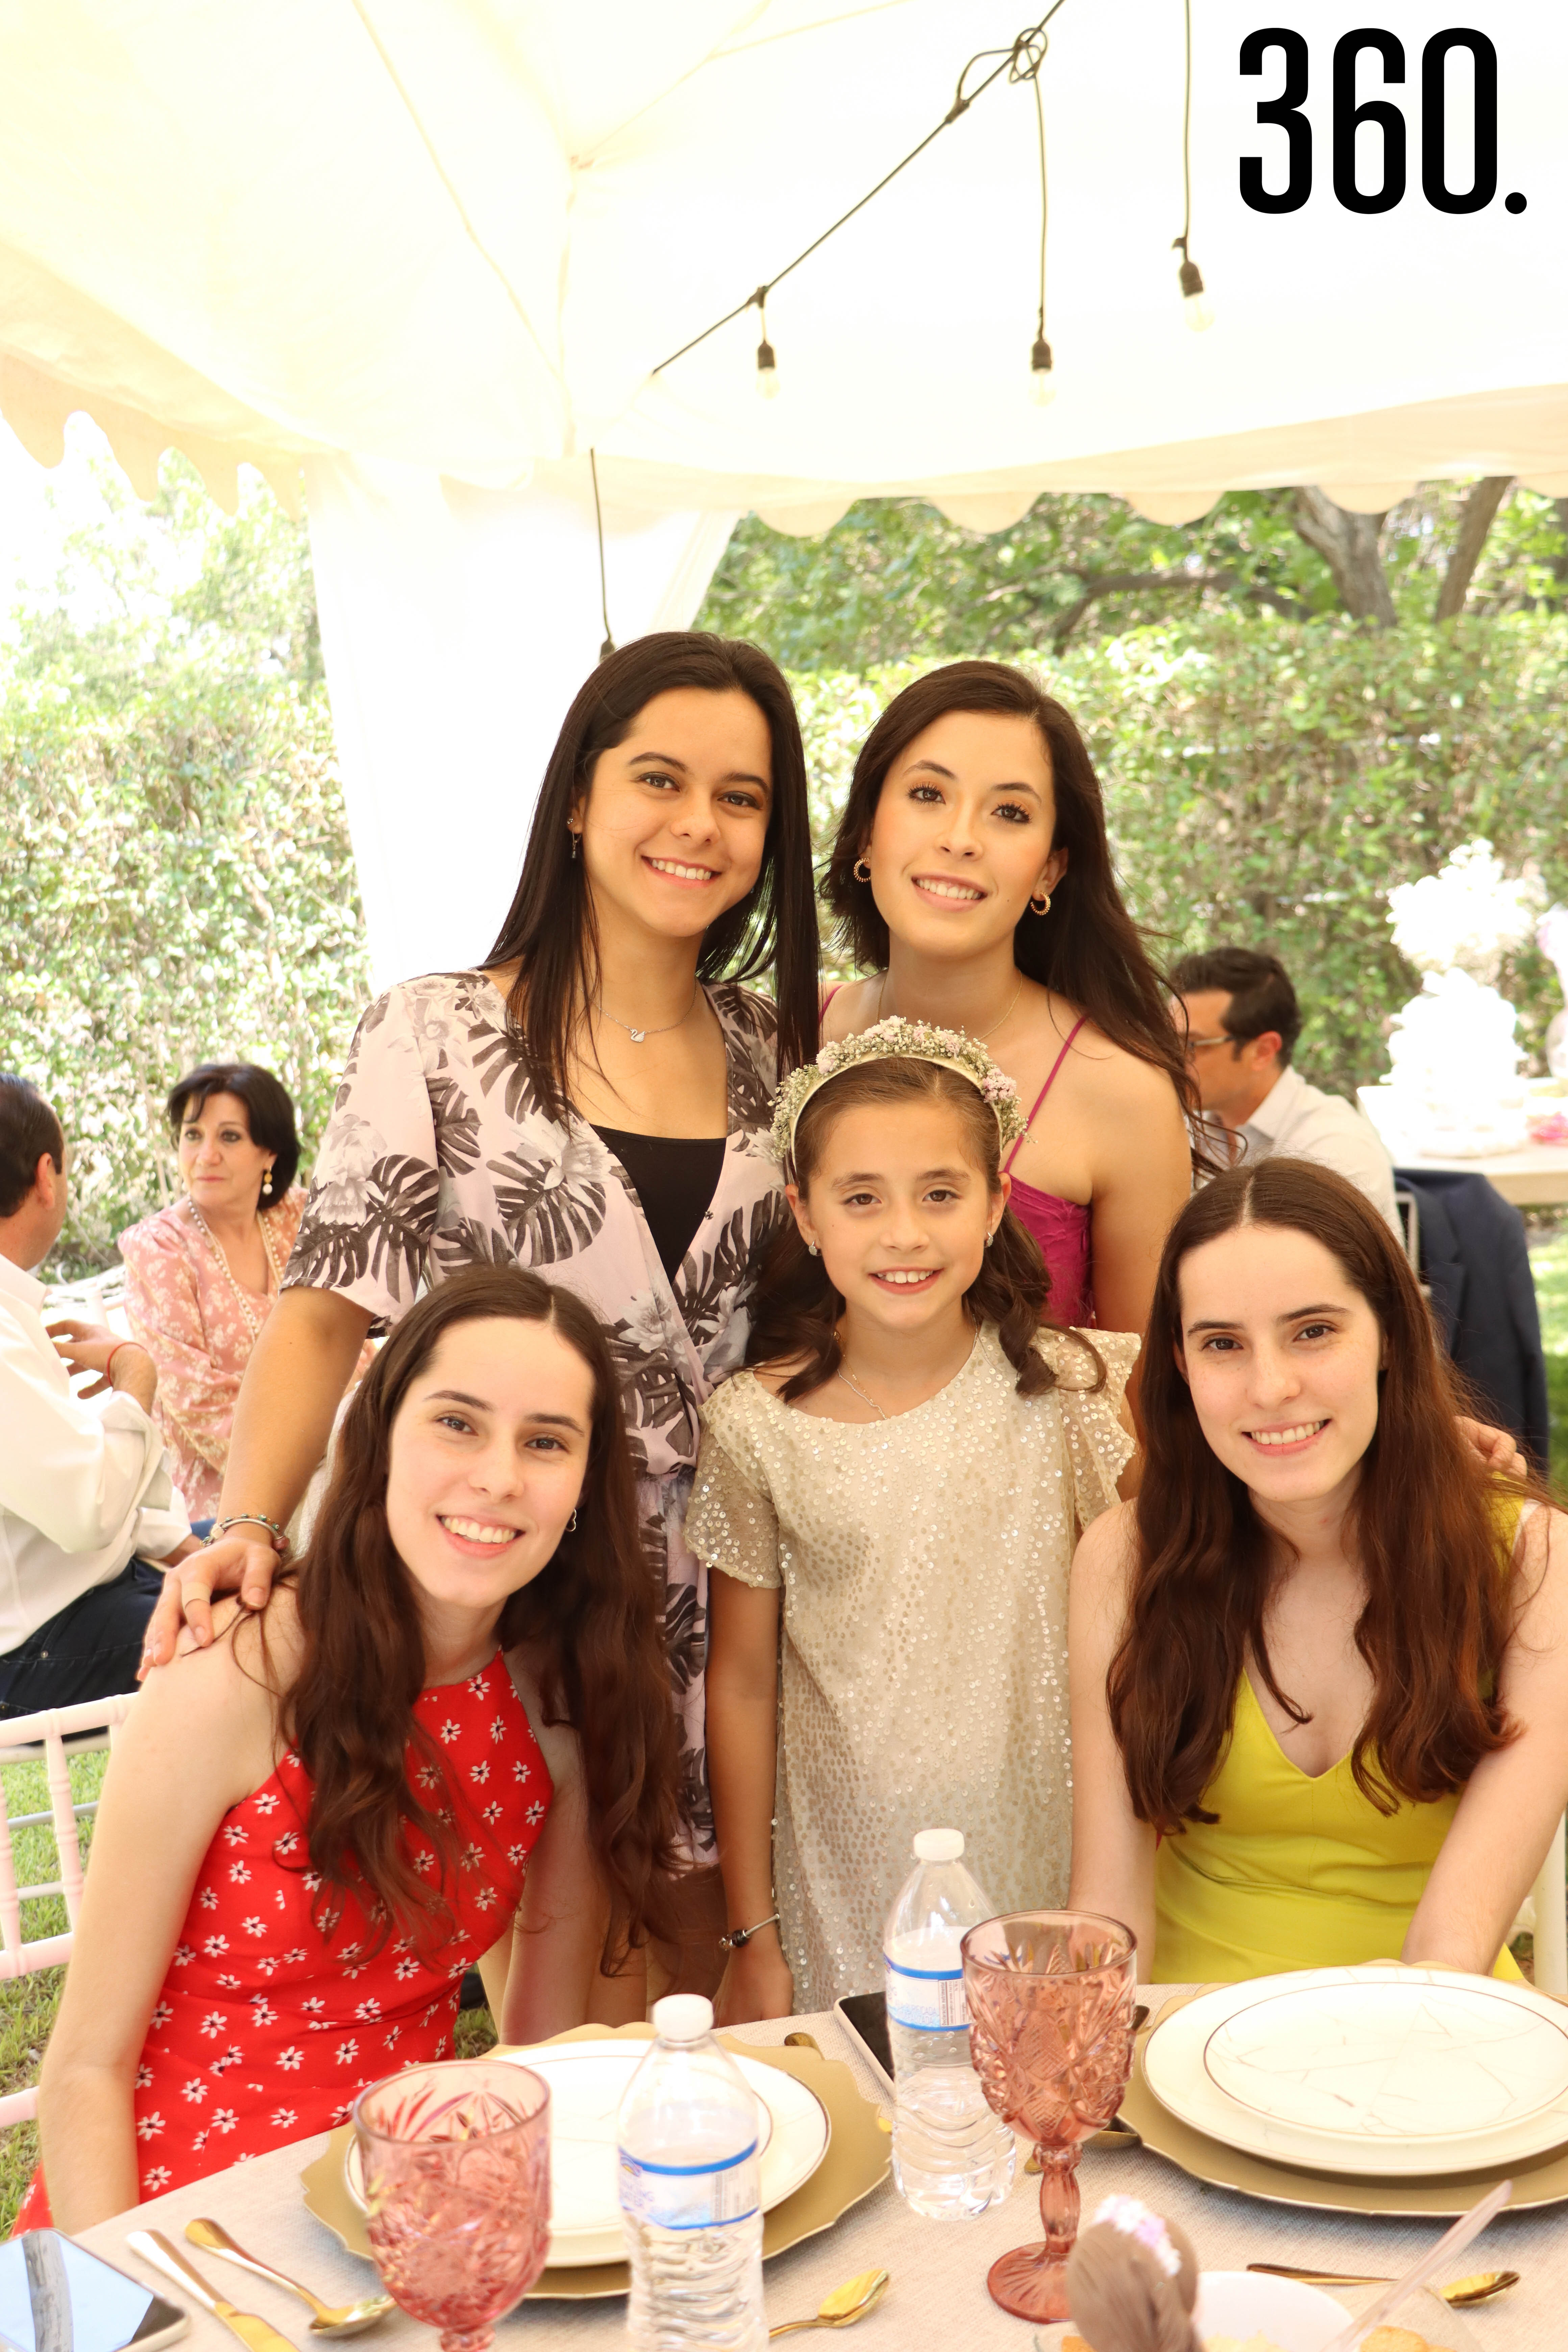 Cristina Rodríguez, María Fernanda Lara, Lorena Moreno, la festejada y Marcela Moreno.